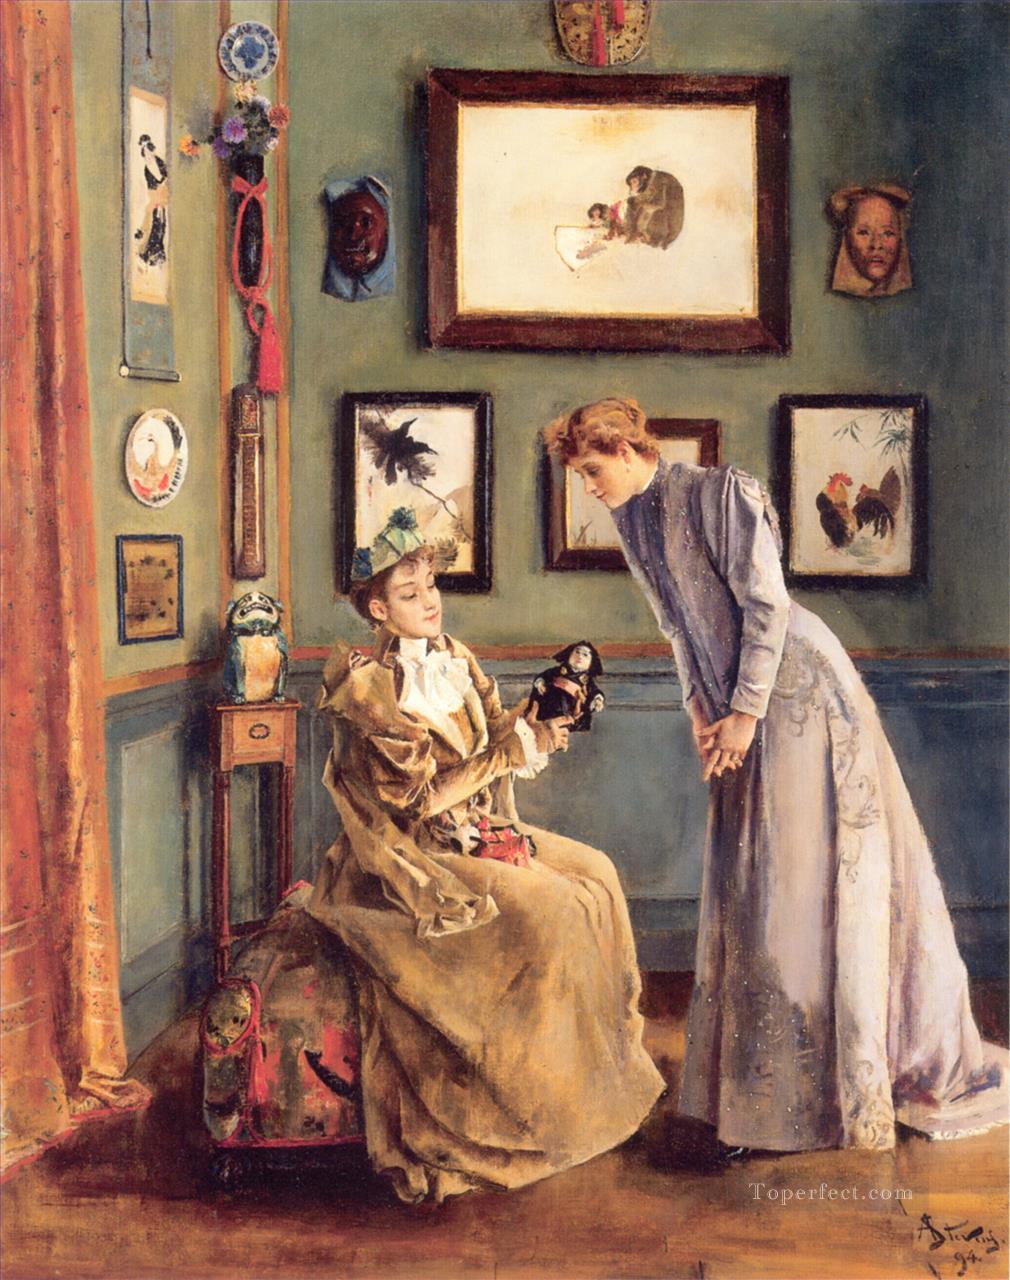 A Femme a la poupee japonaise lady Belgian painter Alfred Stevens Oil Paintings